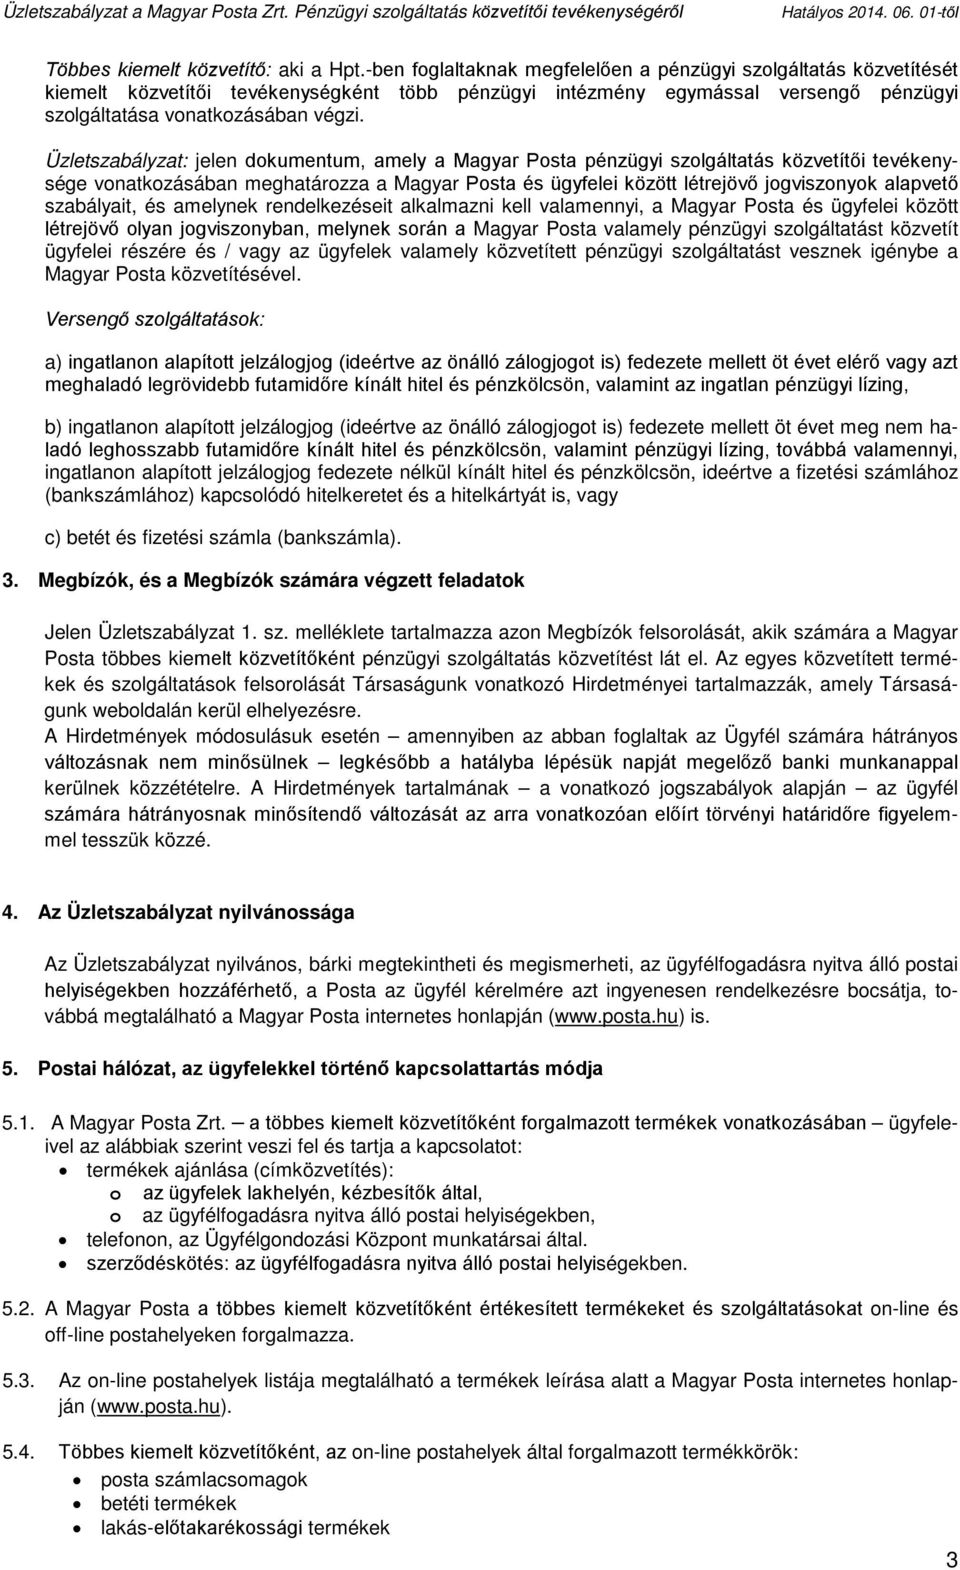 Üzletszabályzat: jelen dokumentum, amely a Magyar Posta pénzügyi szolgáltatás közvetítői tevékenysége vonatkozásában meghatározza a Magyar Posta és ügyfelei között létrejövő jogviszonyok alapvető